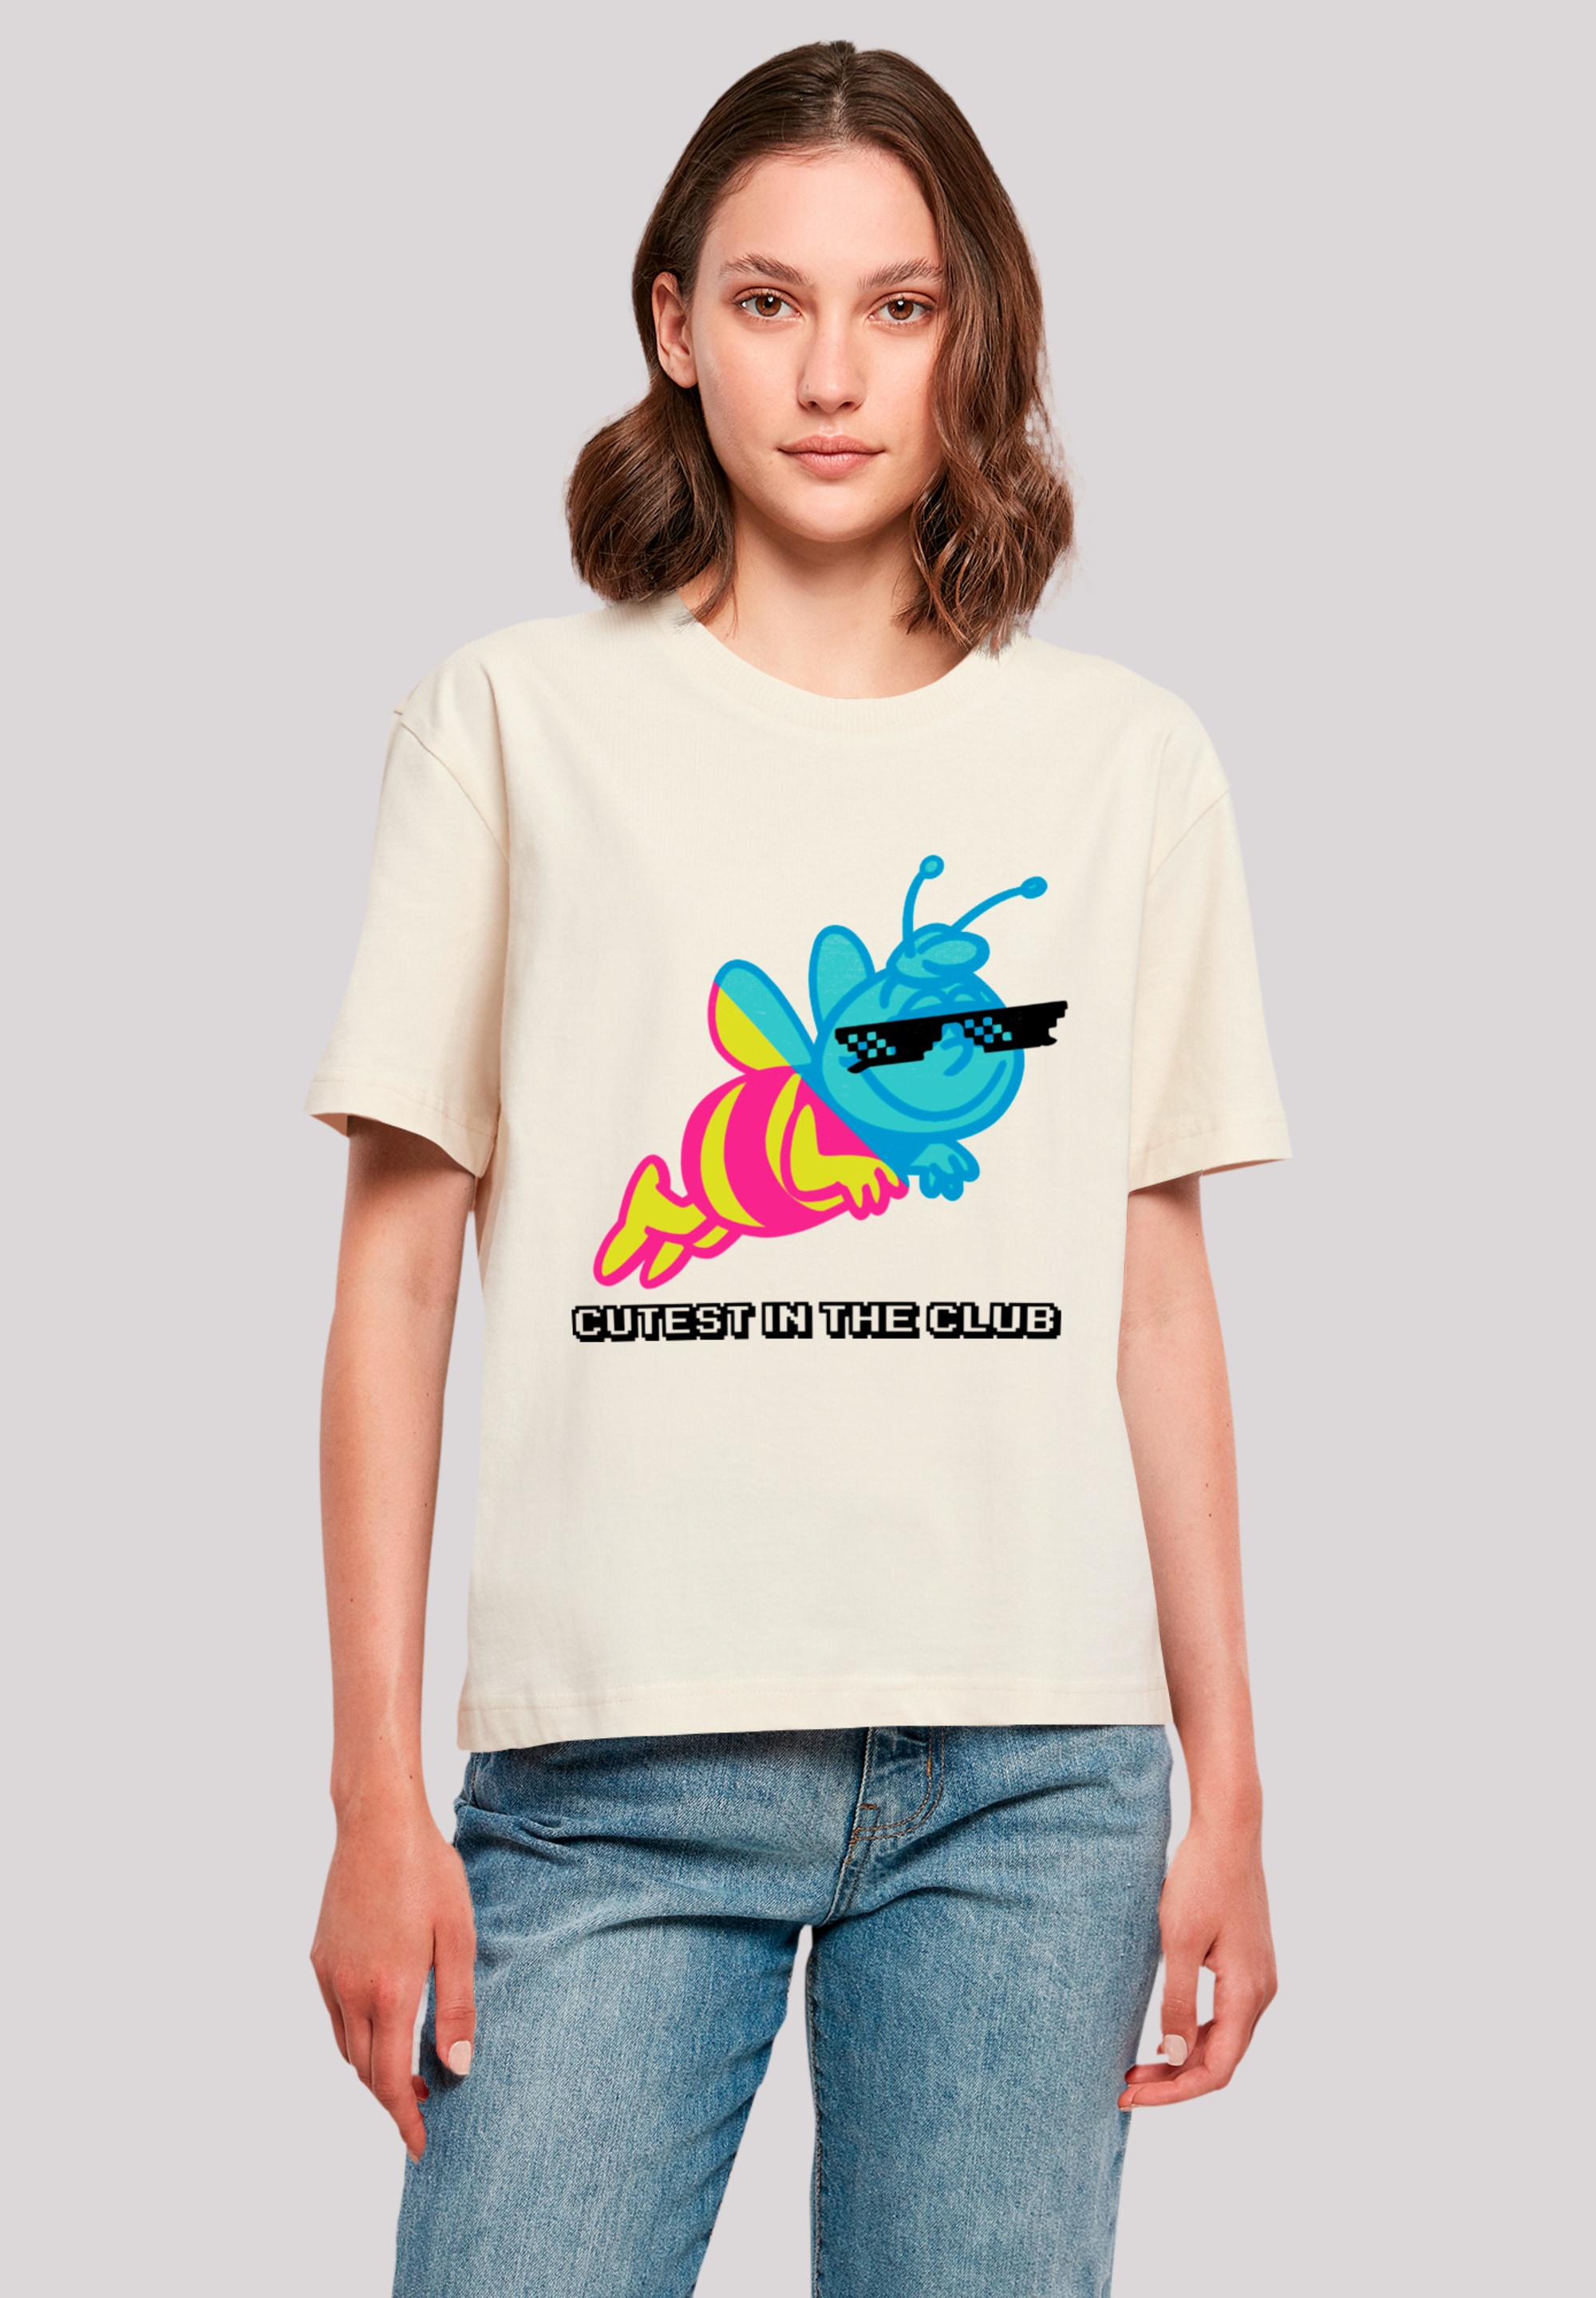 T-Shirt »Die Biene Maja Cutest In Club Heroes of Childhood«, Nostalgie, Retro, Heroes...